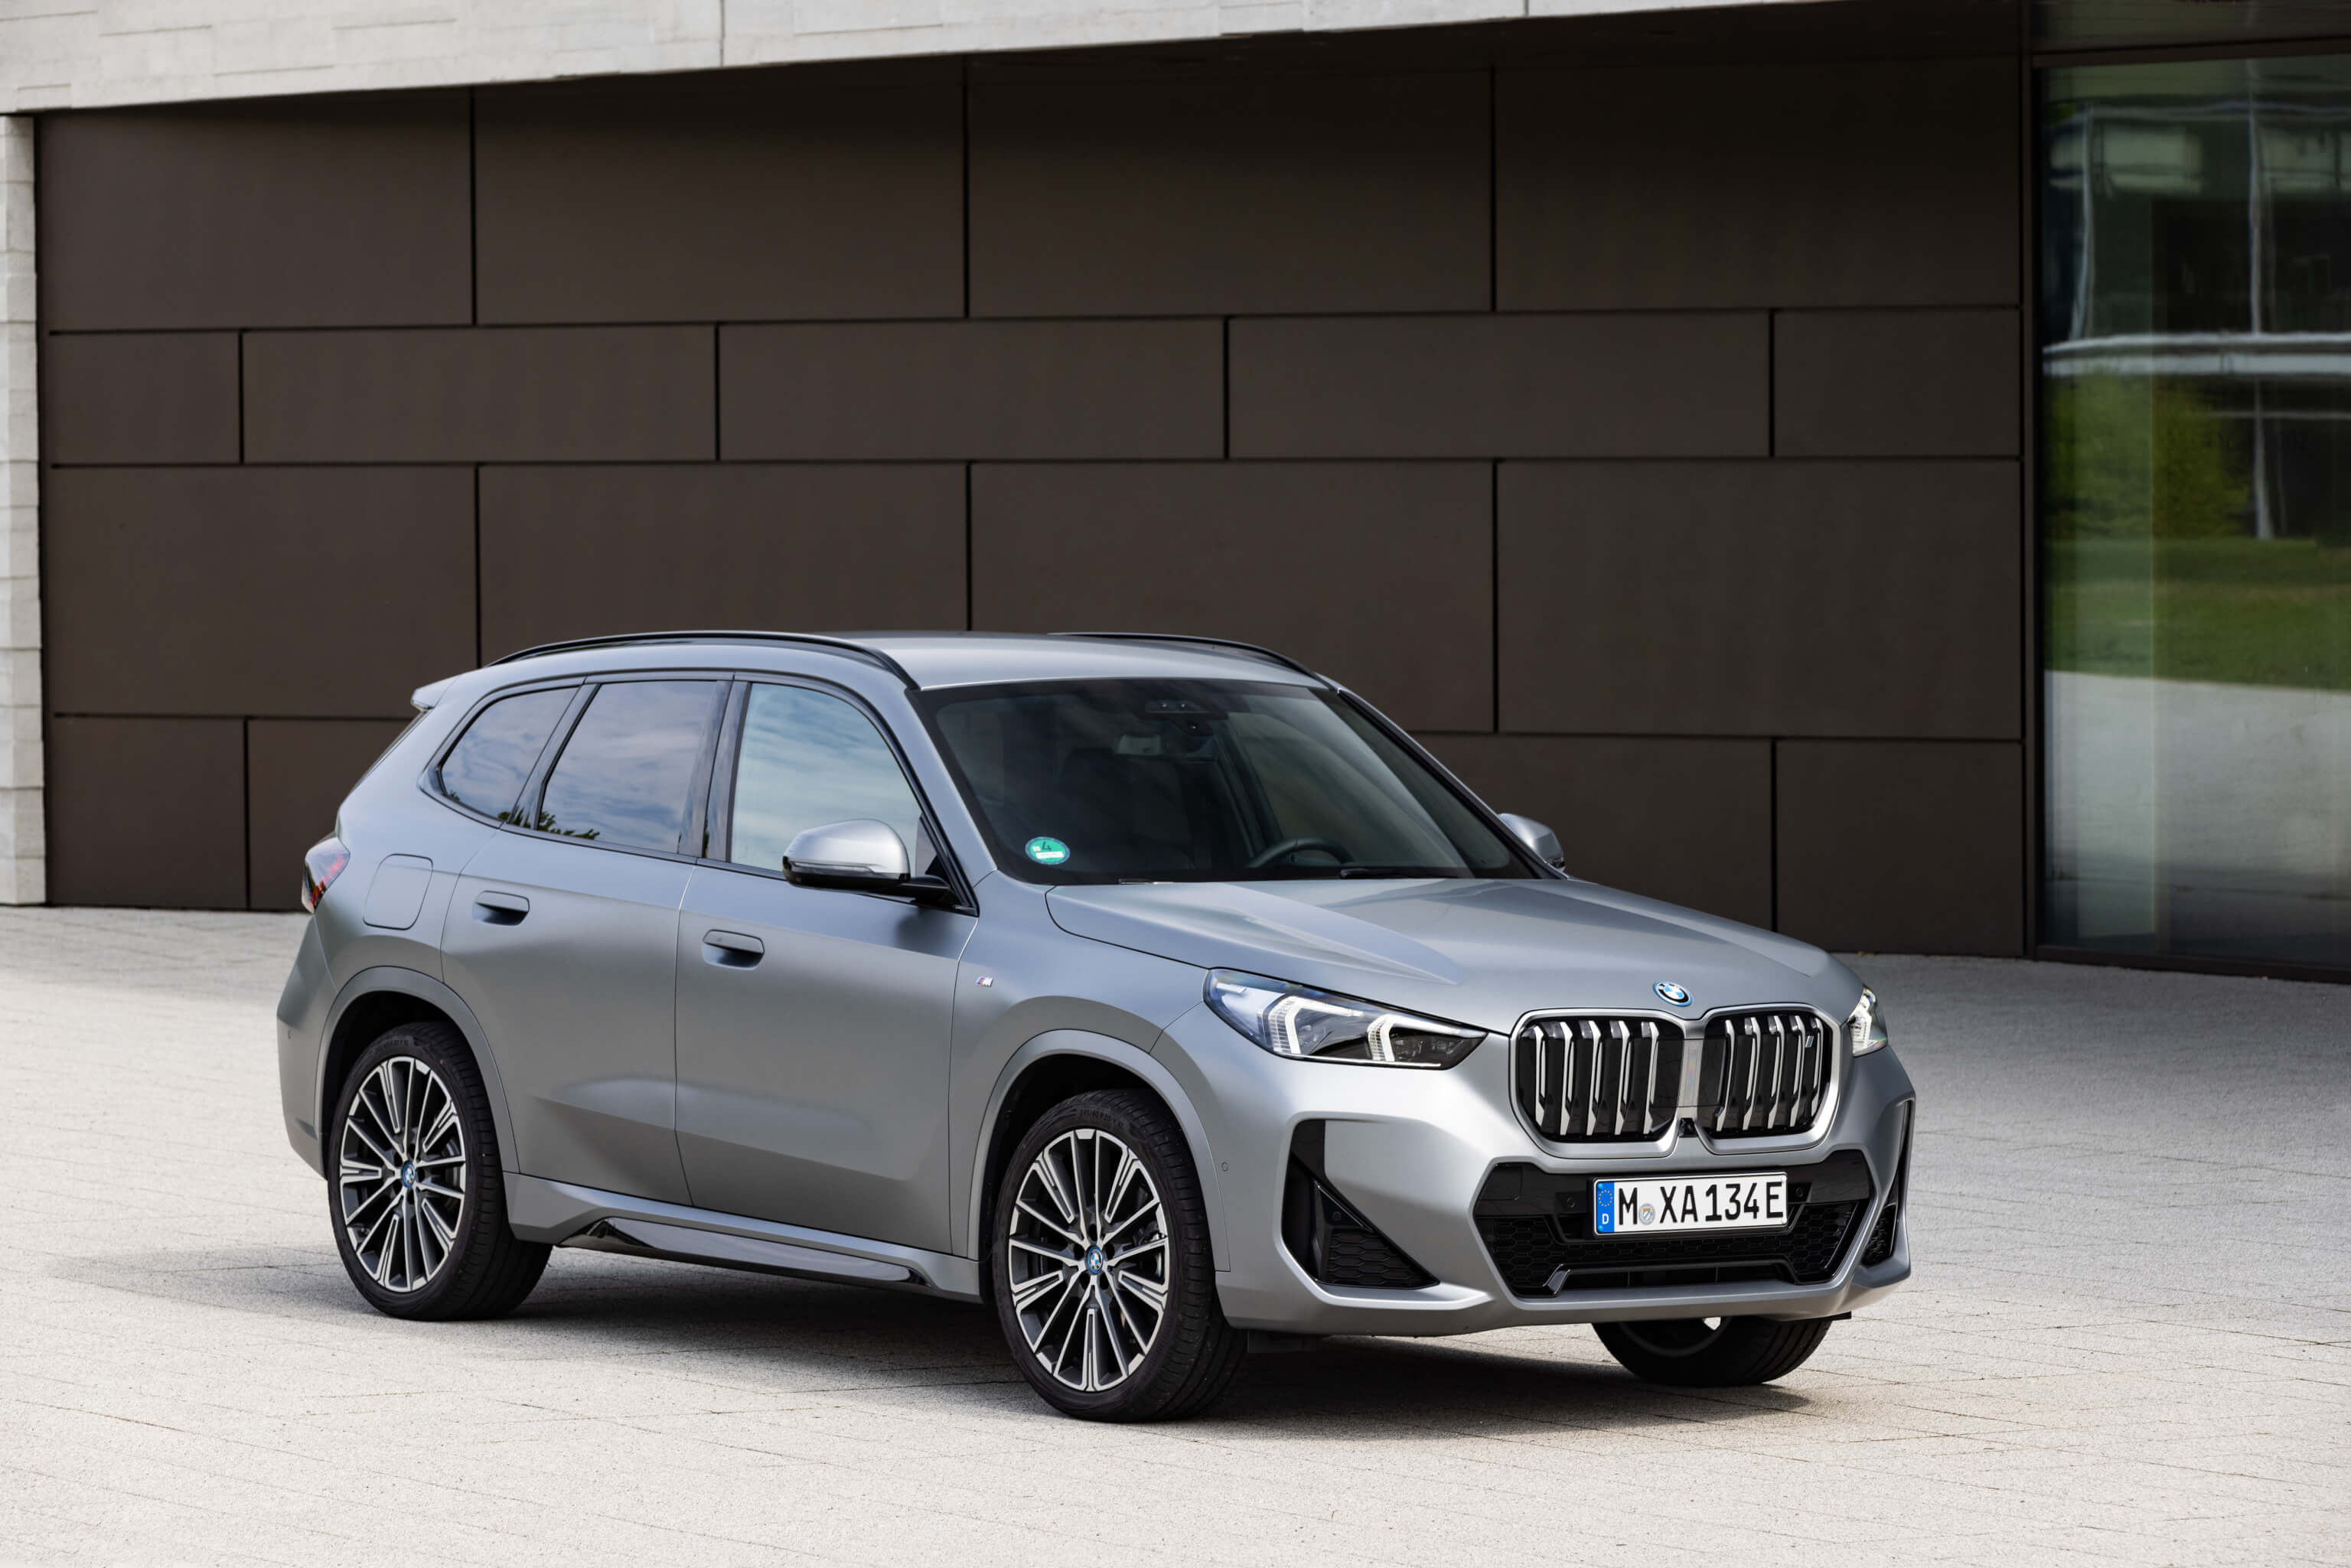 BMW X1 Leasing für 414 Euro im Monat brutto sparneuwagen.de